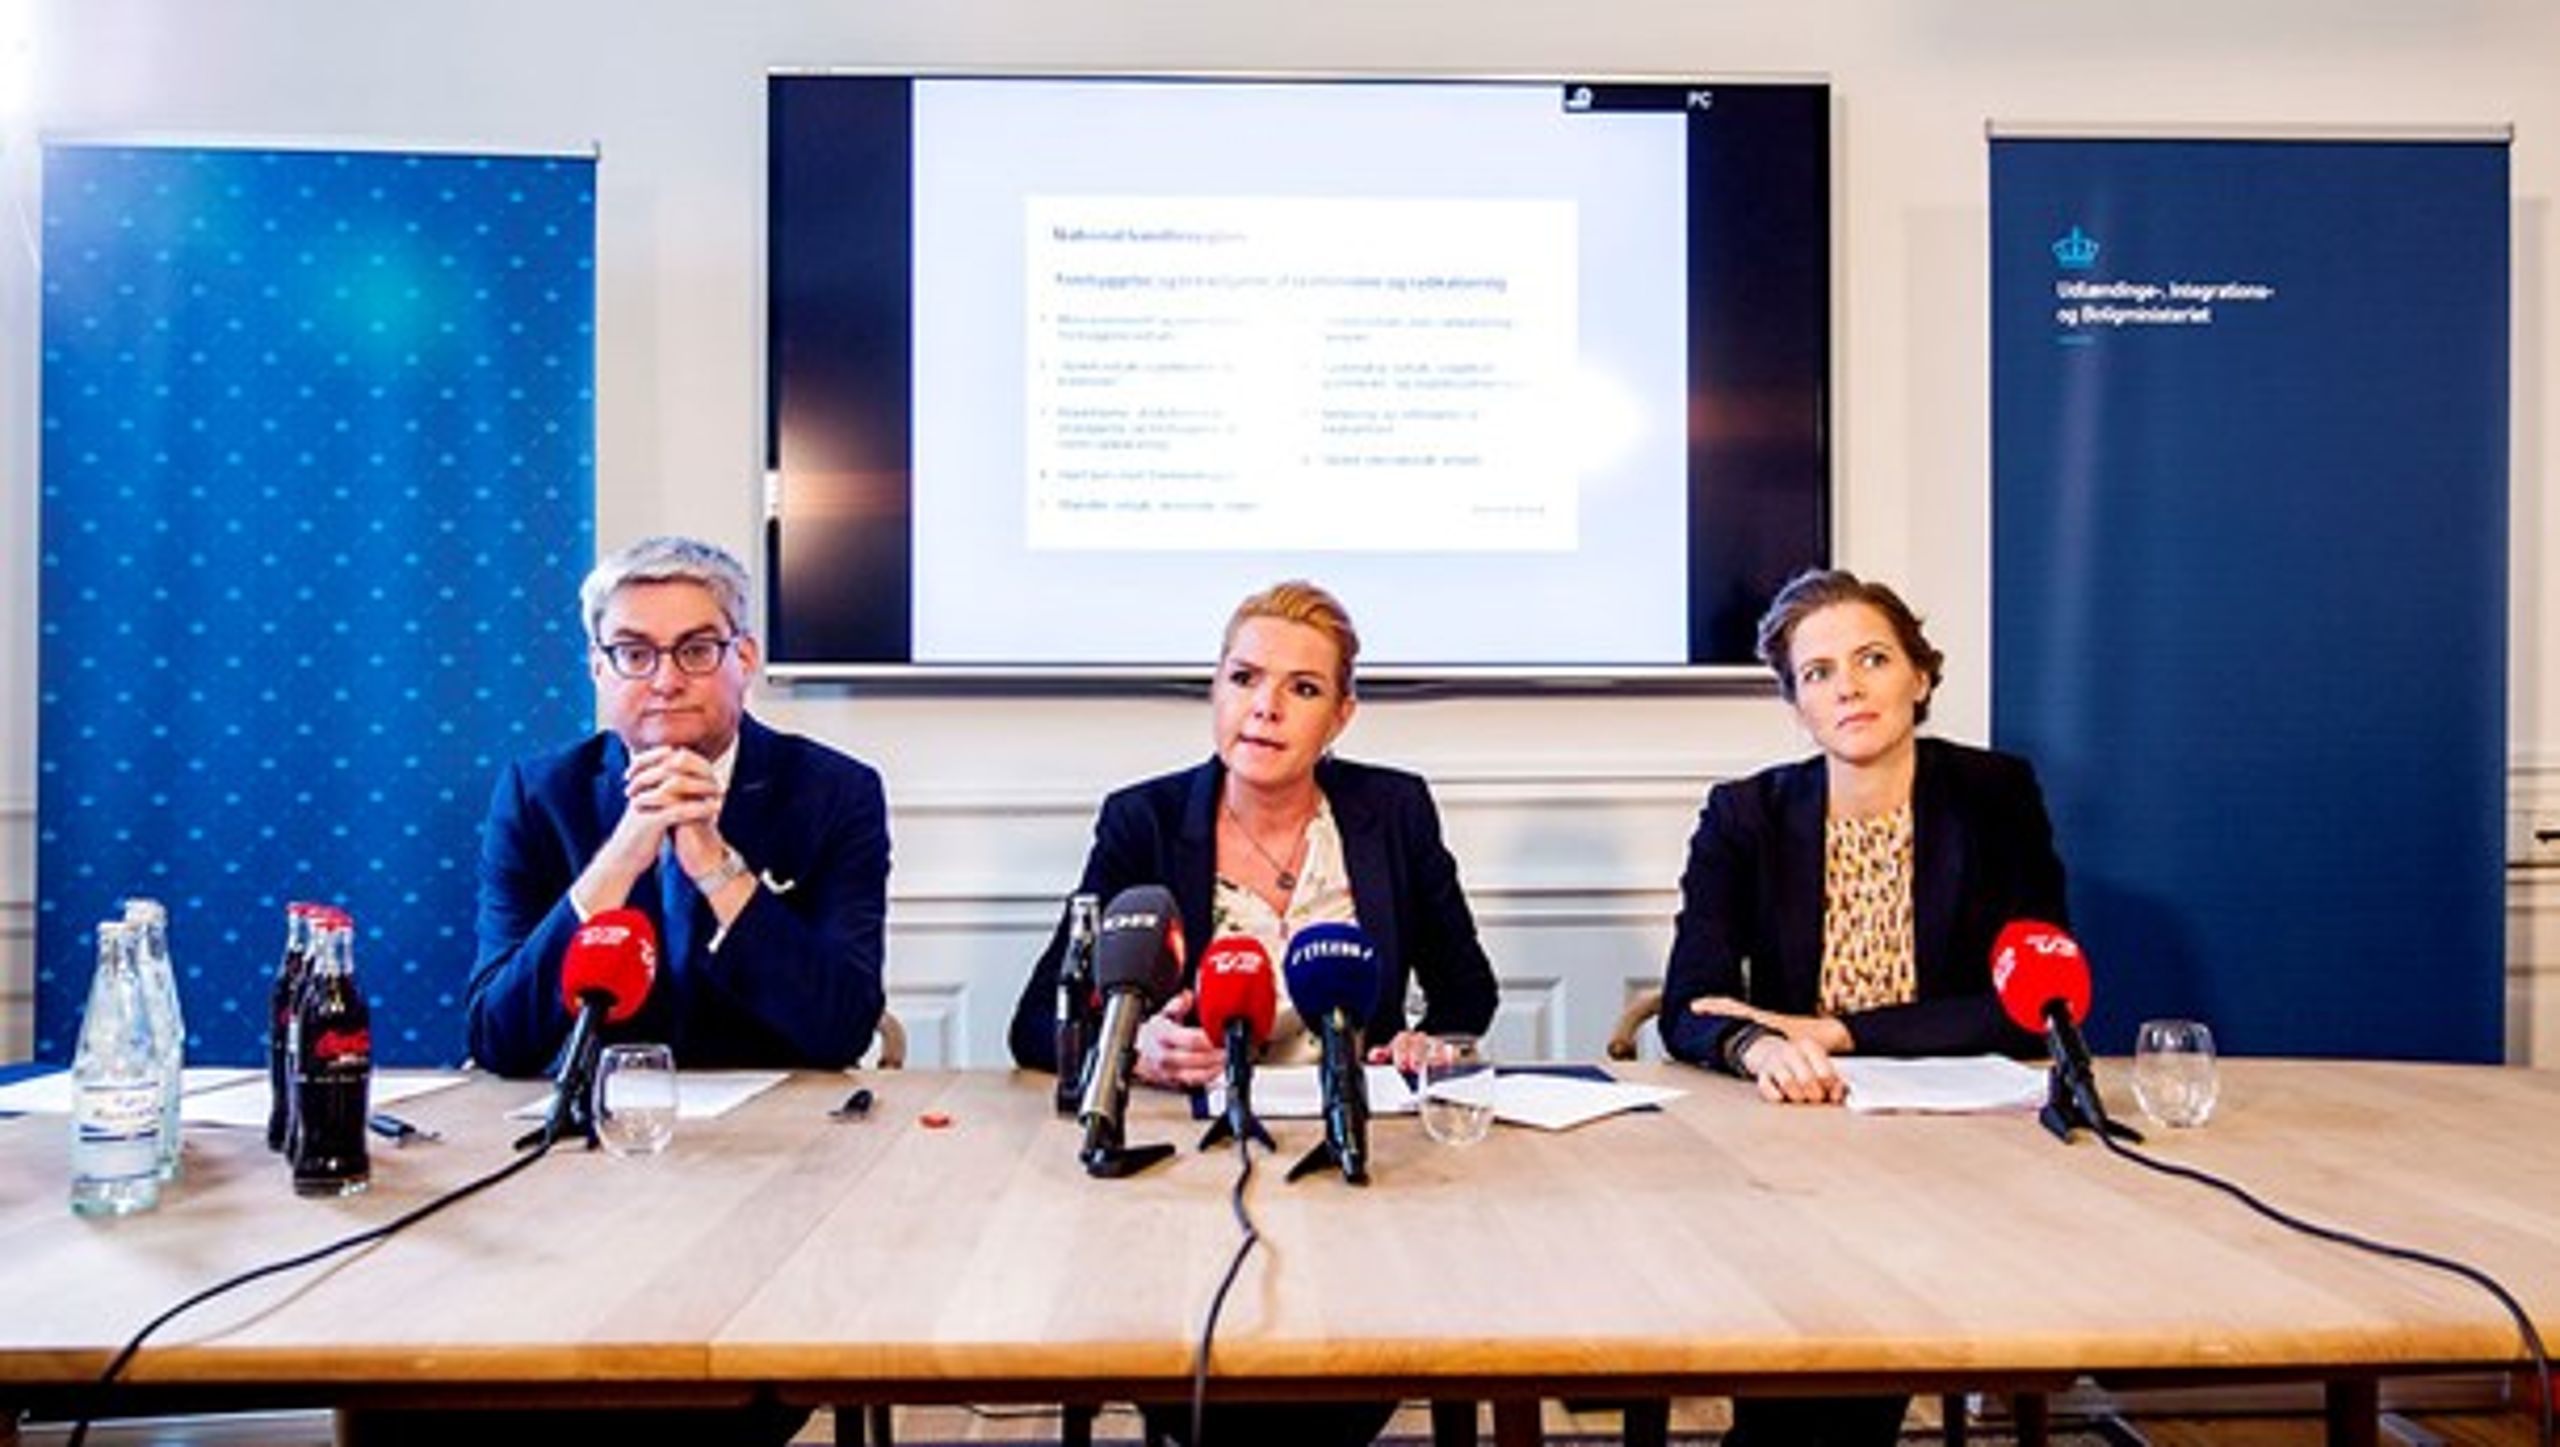 Søren Pind,&nbsp;Inger Støjberg og Ellen Trane Nørby præsenterede regeringens 22 initiativer på et pressemøde.&nbsp;